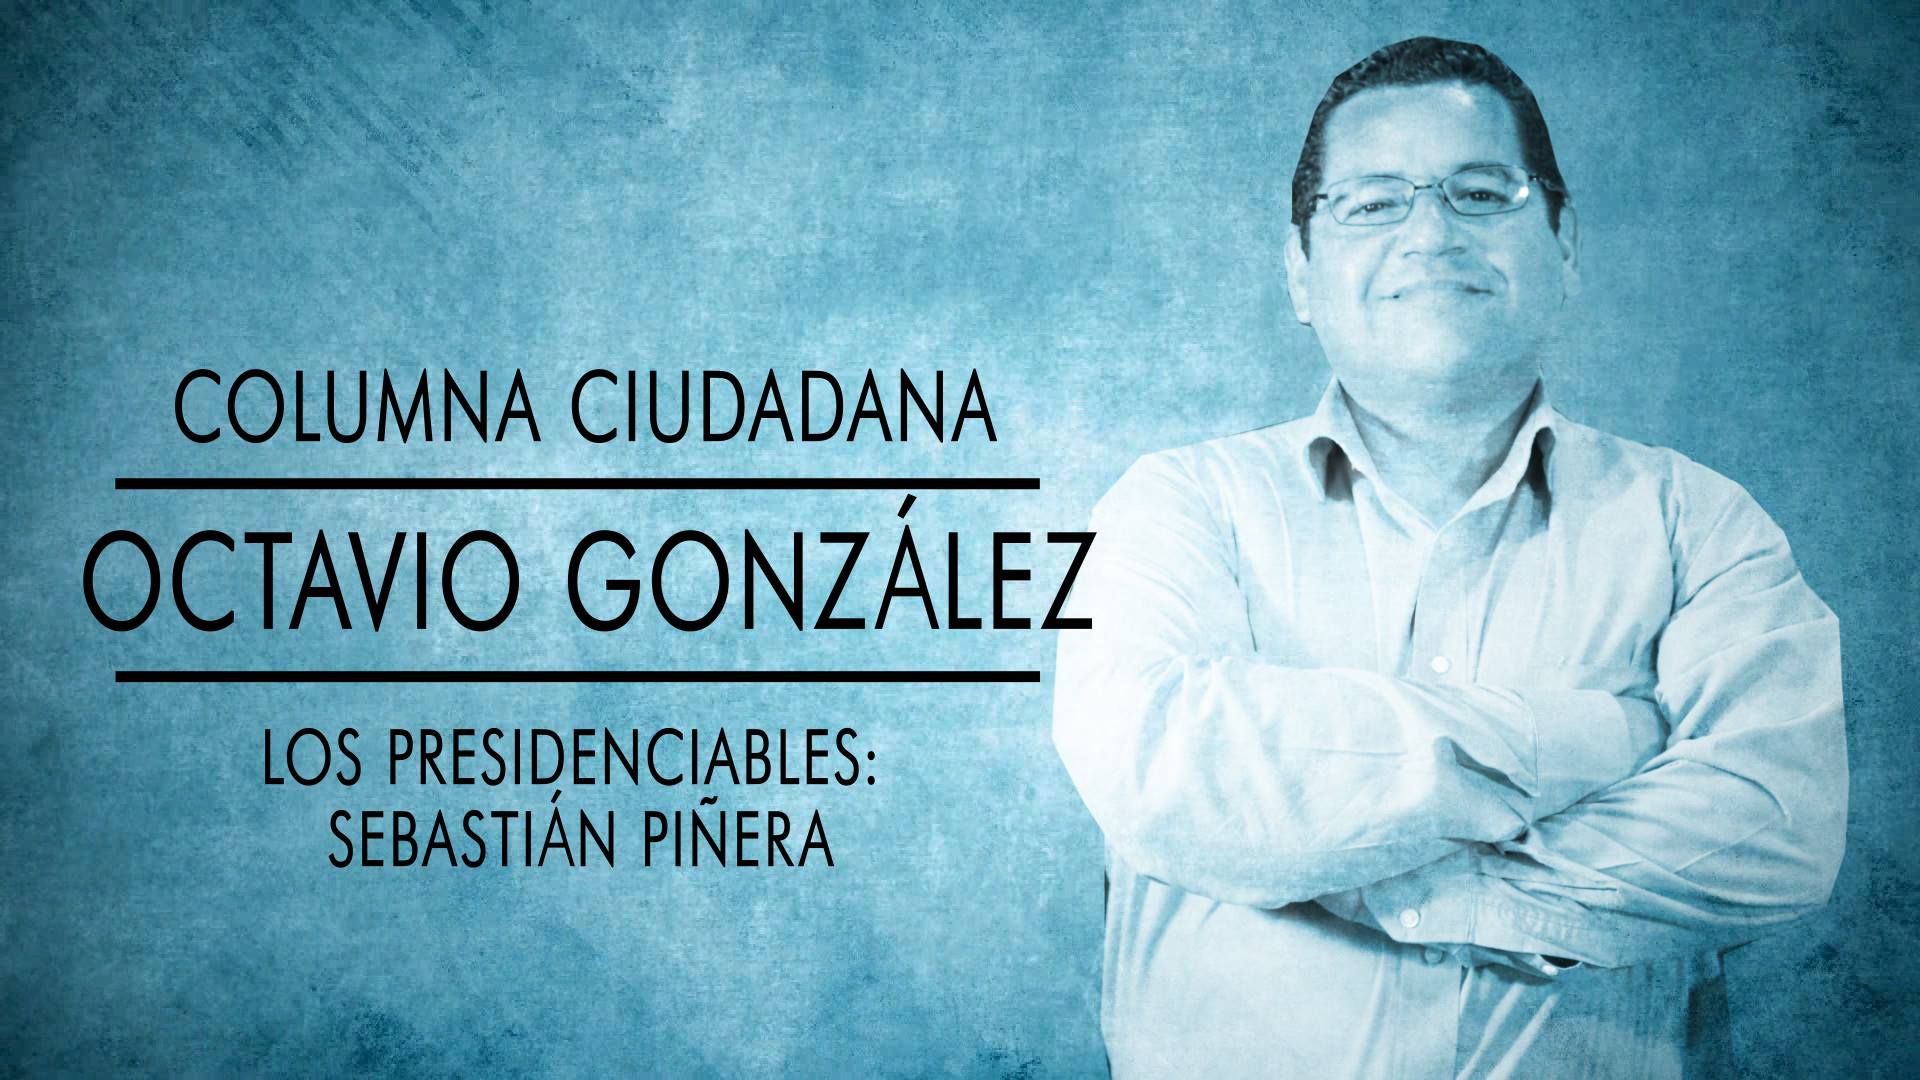 Los Presidenciables: Sebastián Piñera